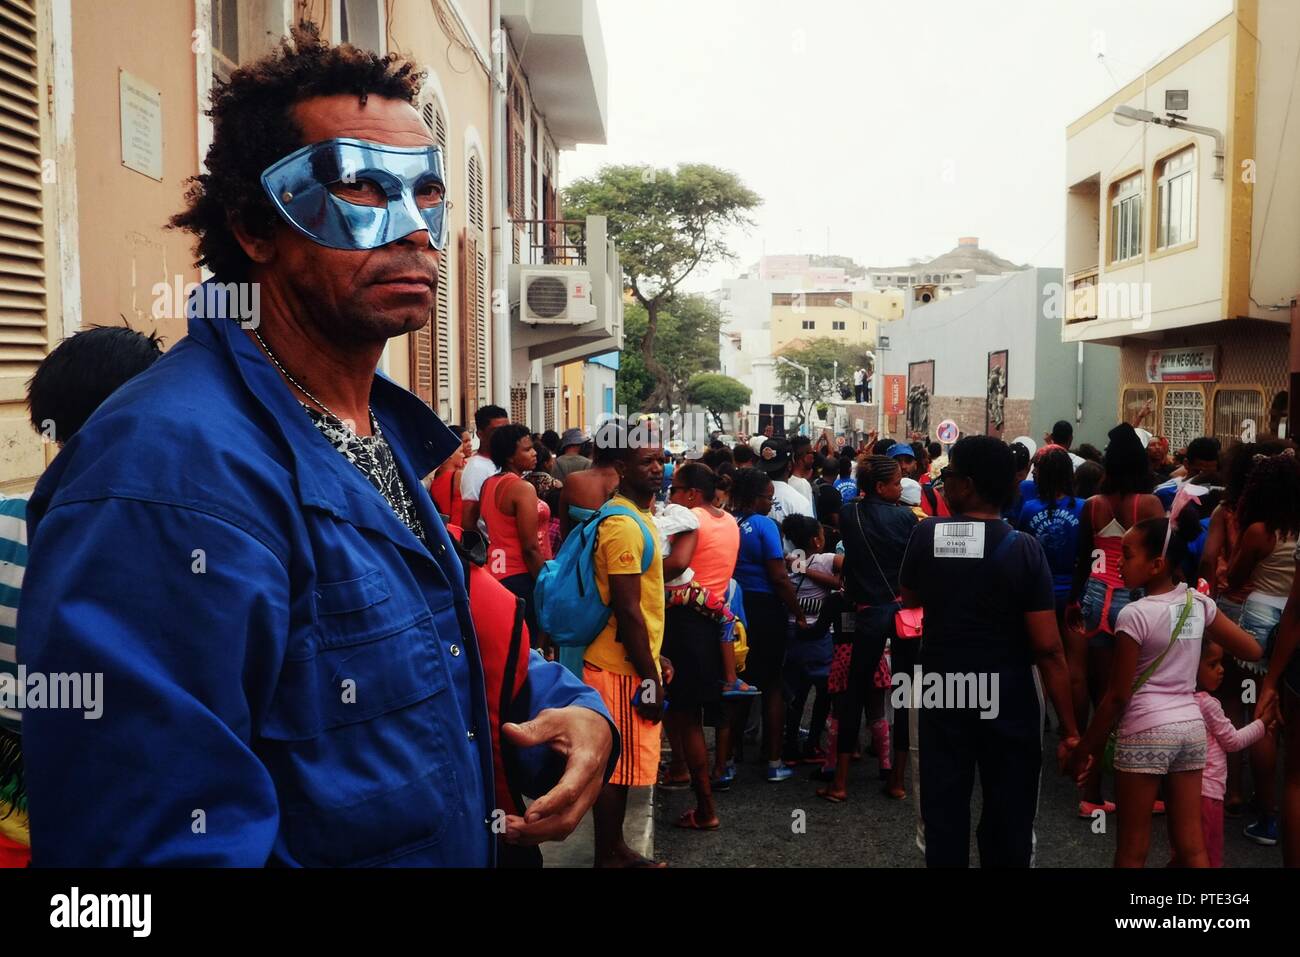 Mindelo, île de Sao Vicente, Cap Vert - 5 janv. 2016 : l'homme avec un masque de regarder l'événement carnaval dans les rues de la ville Banque D'Images